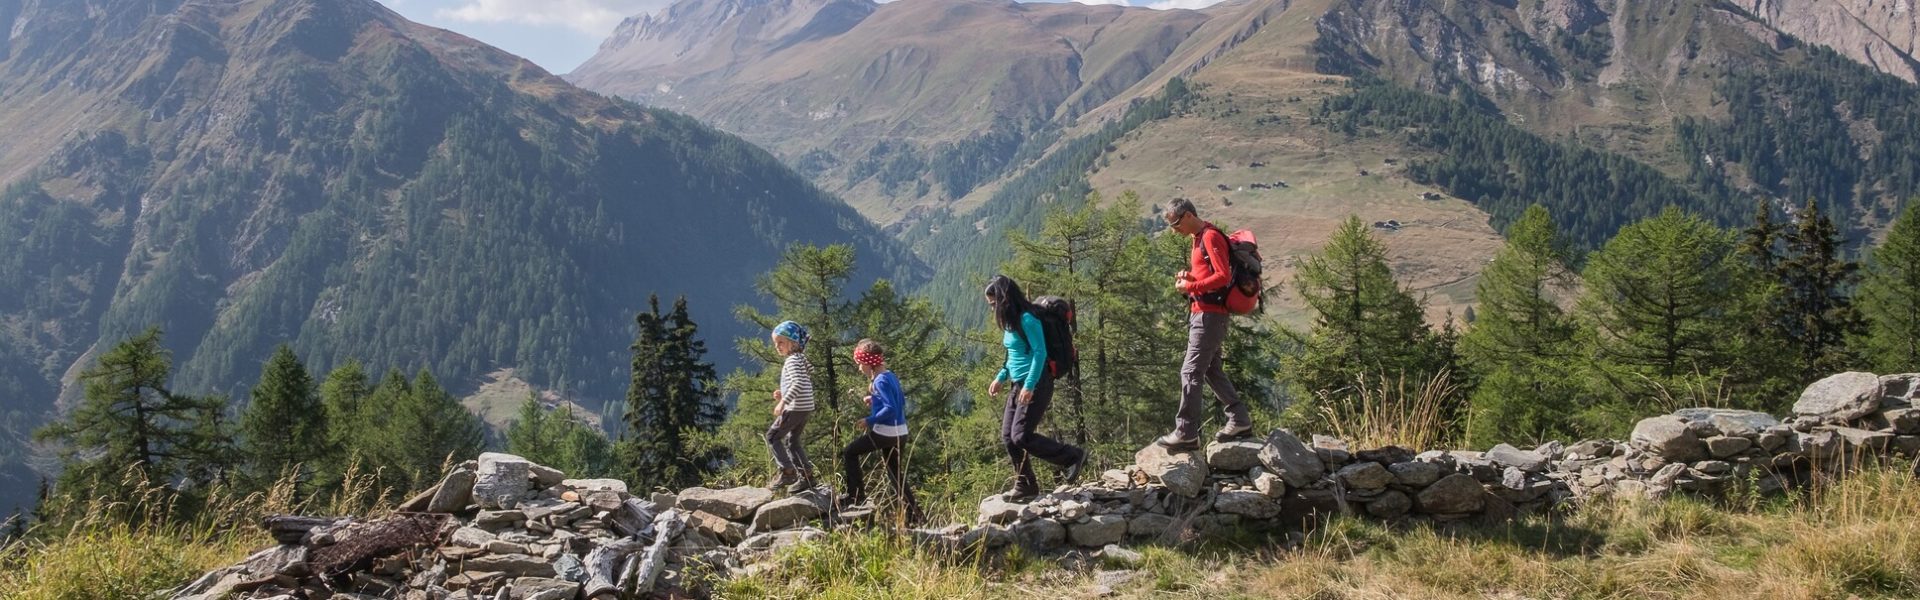 Natura Trail Binntal, Familie wandert über Steinigen Grund